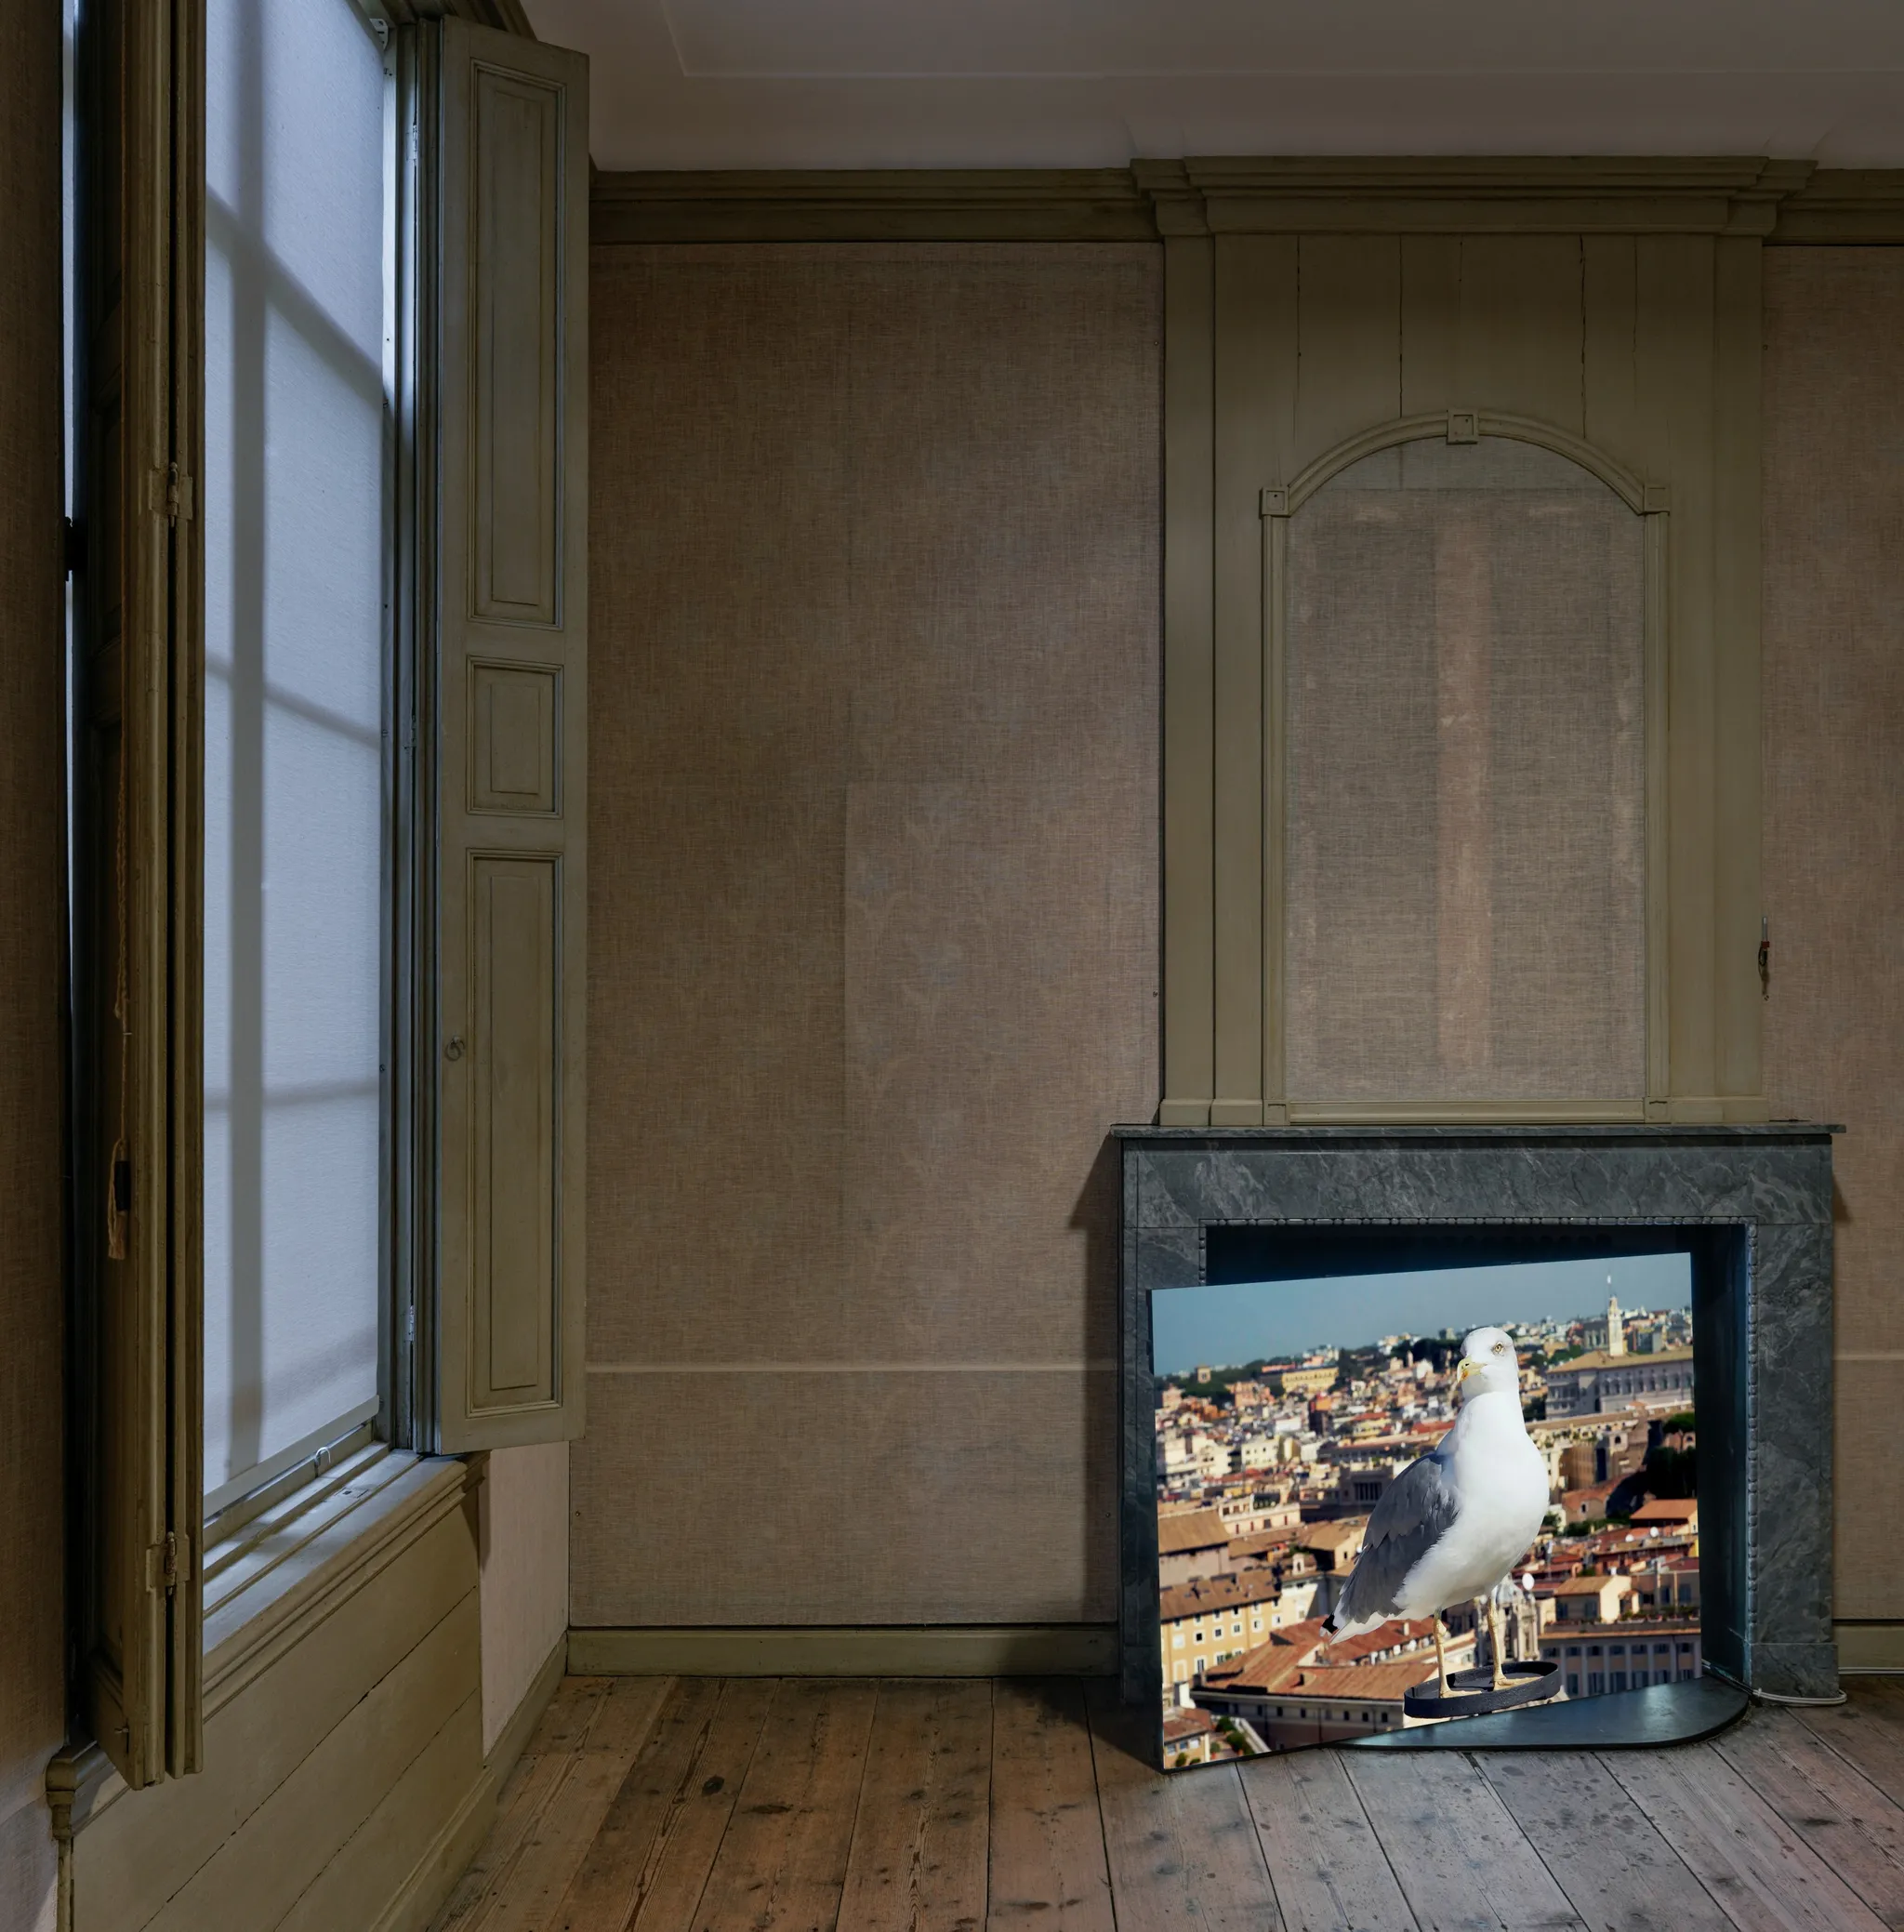 Het beeld van een meeuw die bovenop een gebouw zit, op een scherm dat schuin voor een marmeren schoorsteen is geplaatst